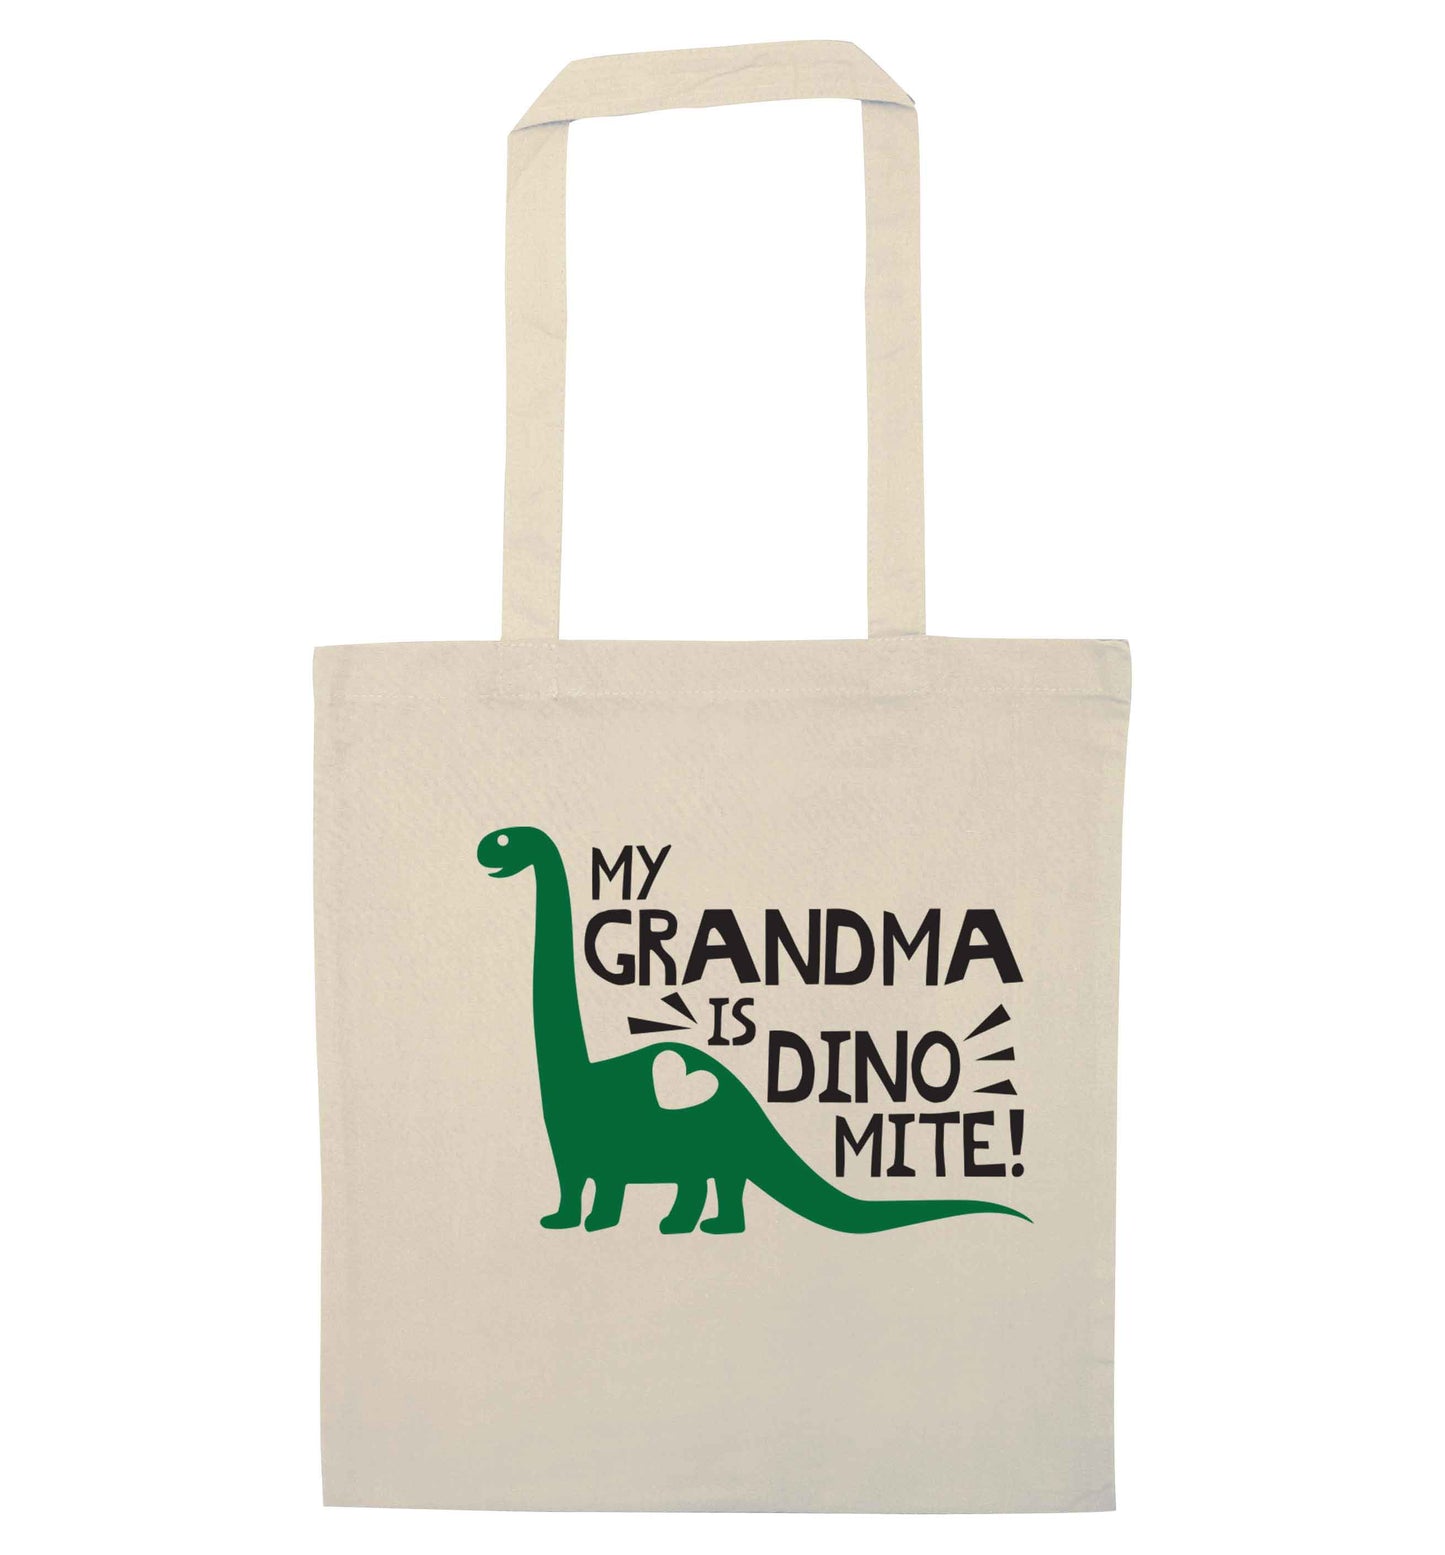 My grandma is dinomite! natural tote bag